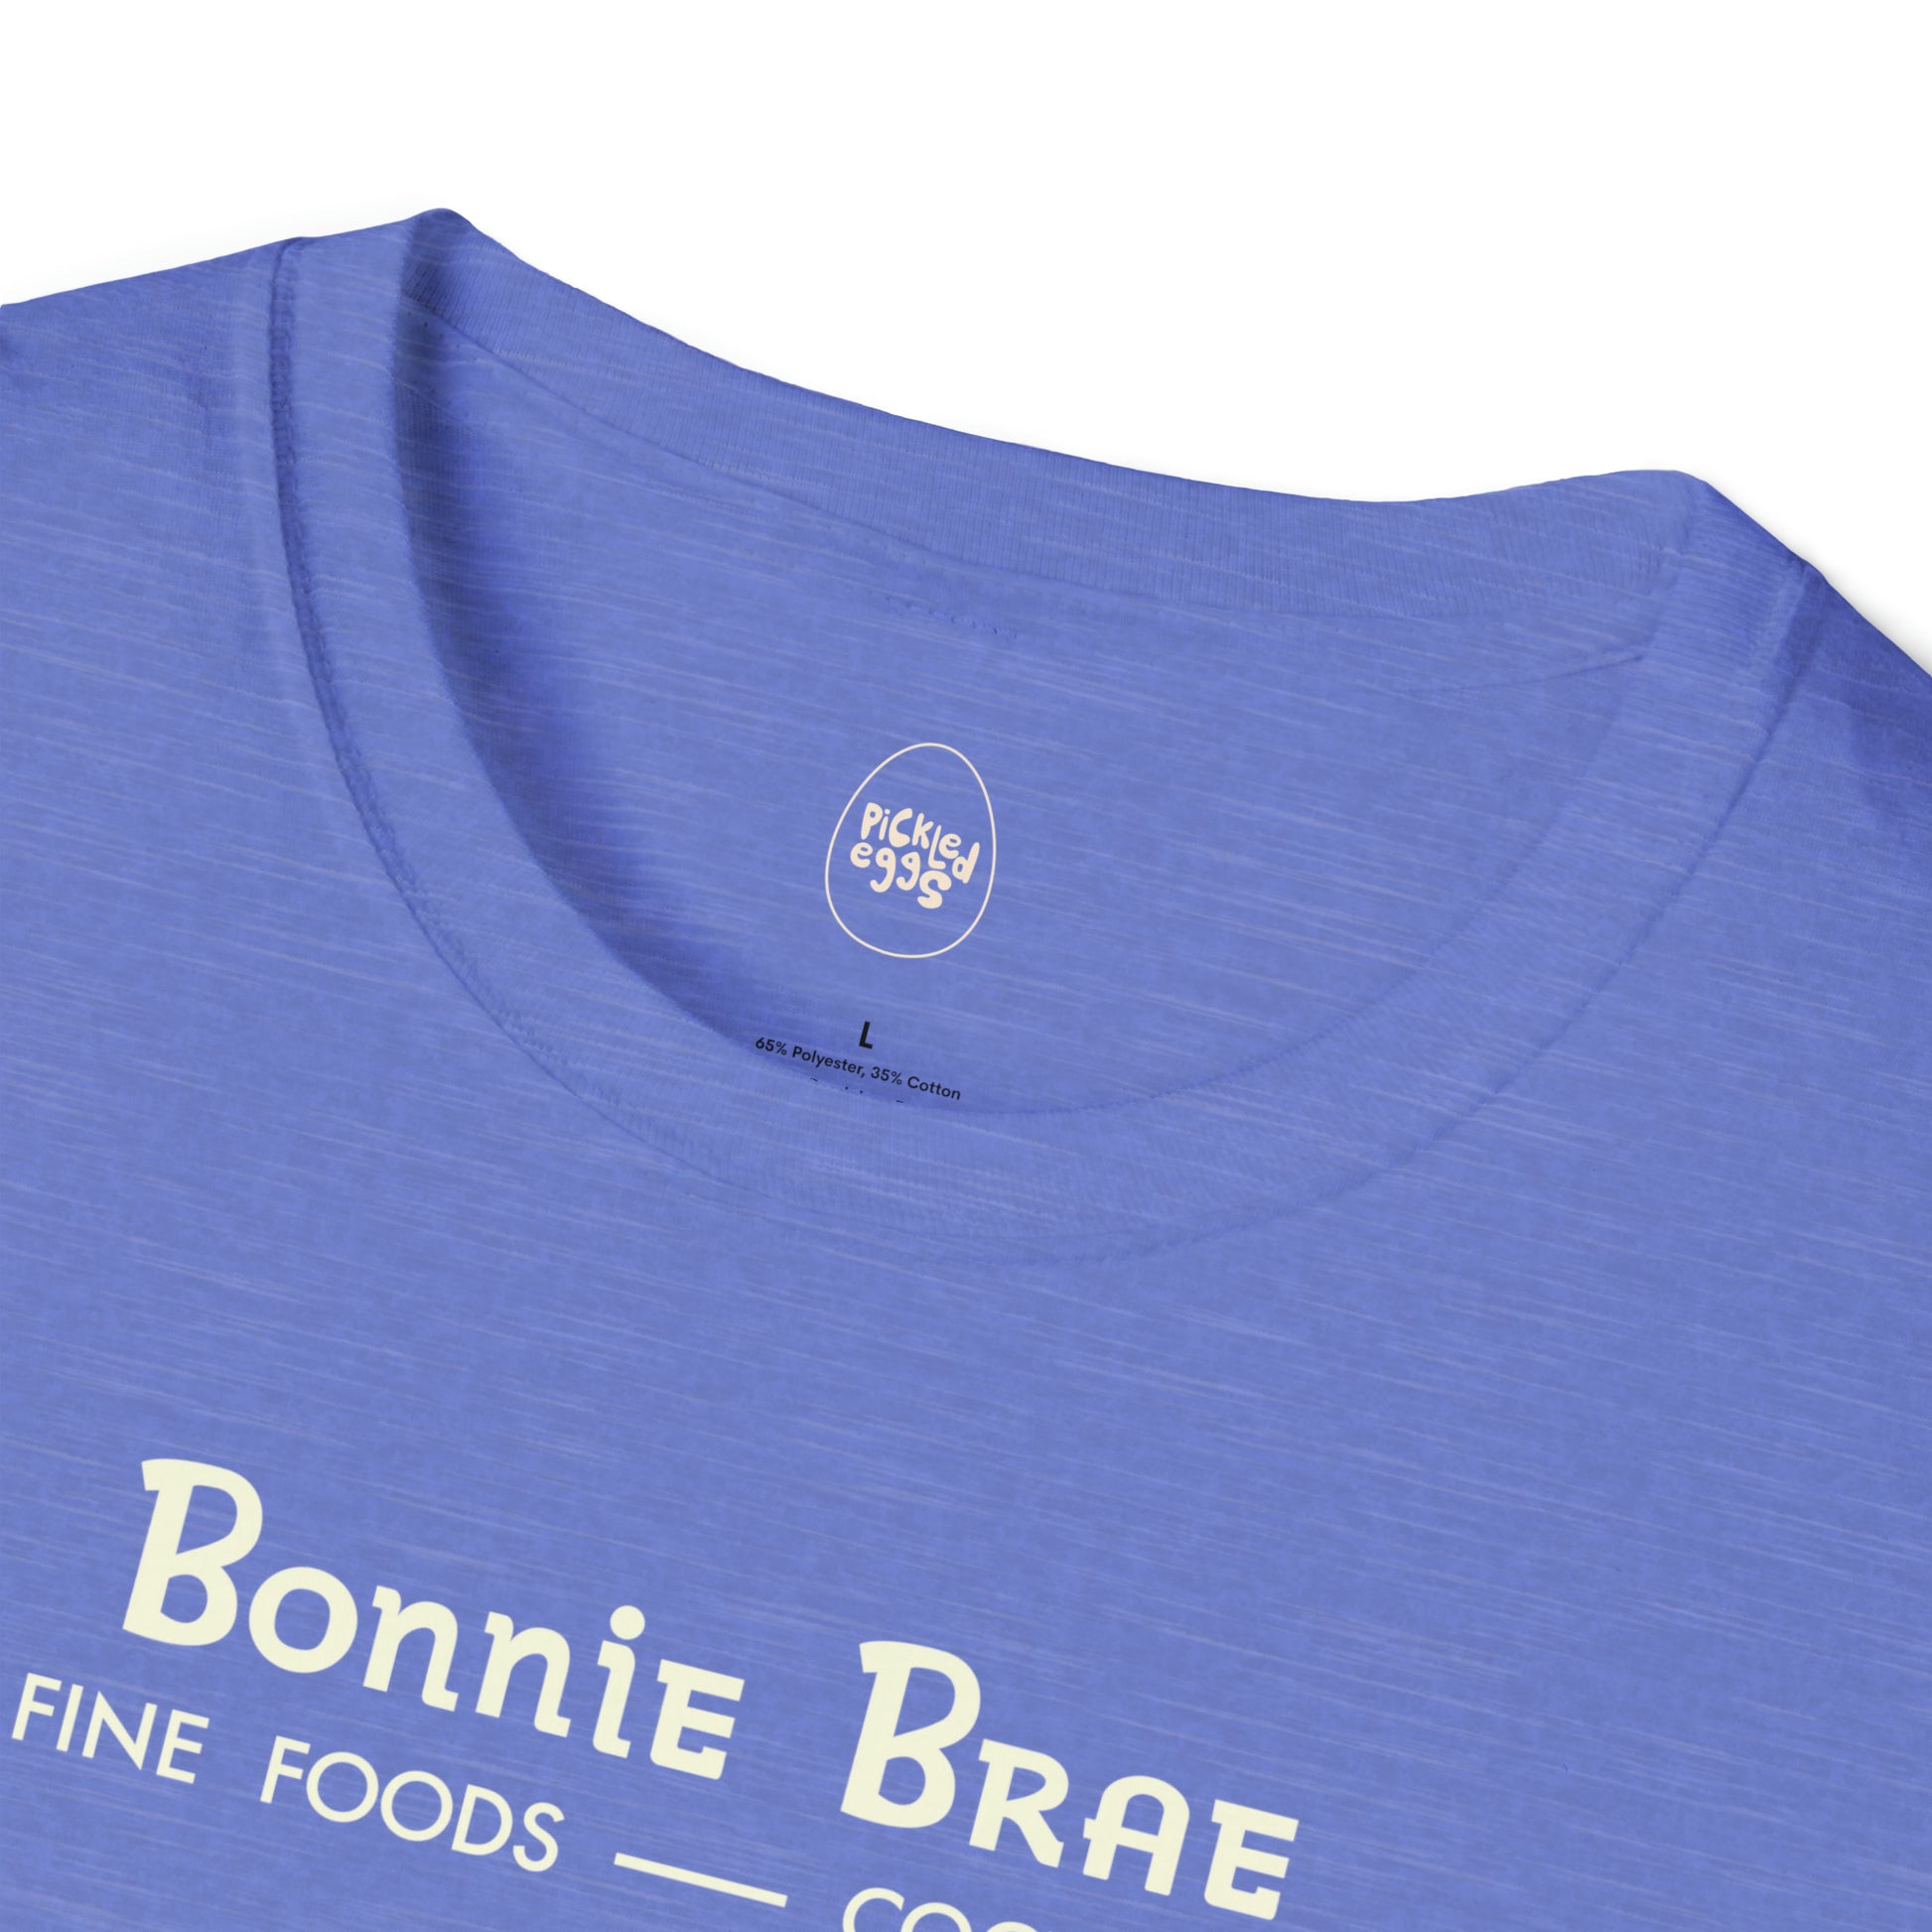 Tavern | Bonnie Brae | Denver | Blue Neck Logo